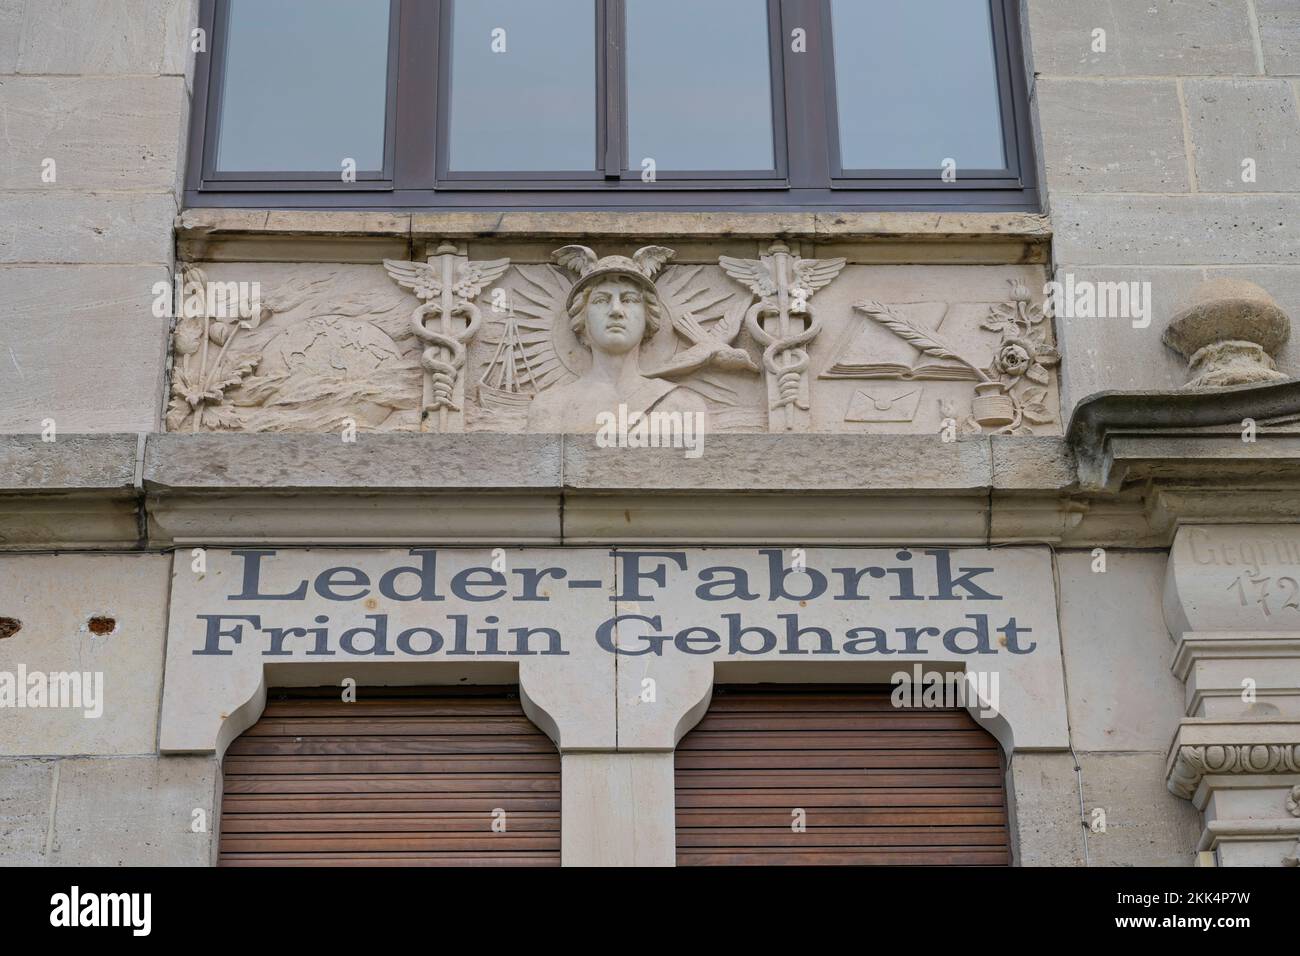 Altbau, alte Inschrift, Leder Fabrik Fridolin Gebhardt, Hauptstraße, Waltershausen, Thüringen, Deutschland Stock Photo